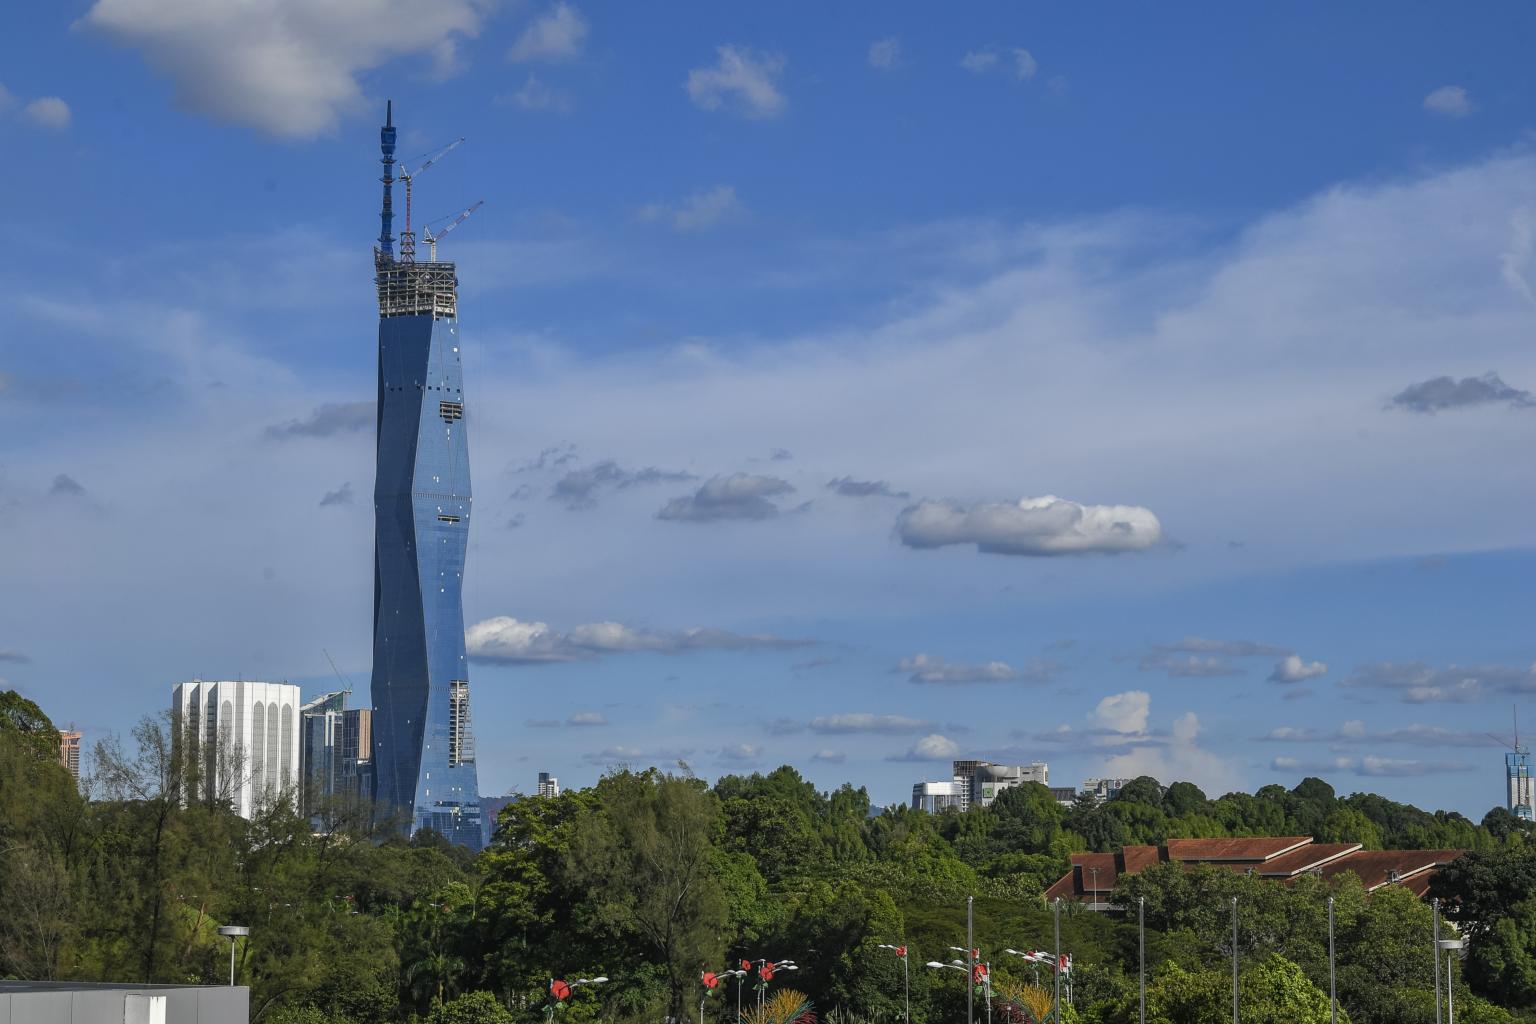 tòa tháp cao thứ 2 thế giới, tháp merdeka, malaysia, tòa nhà merdeka 118